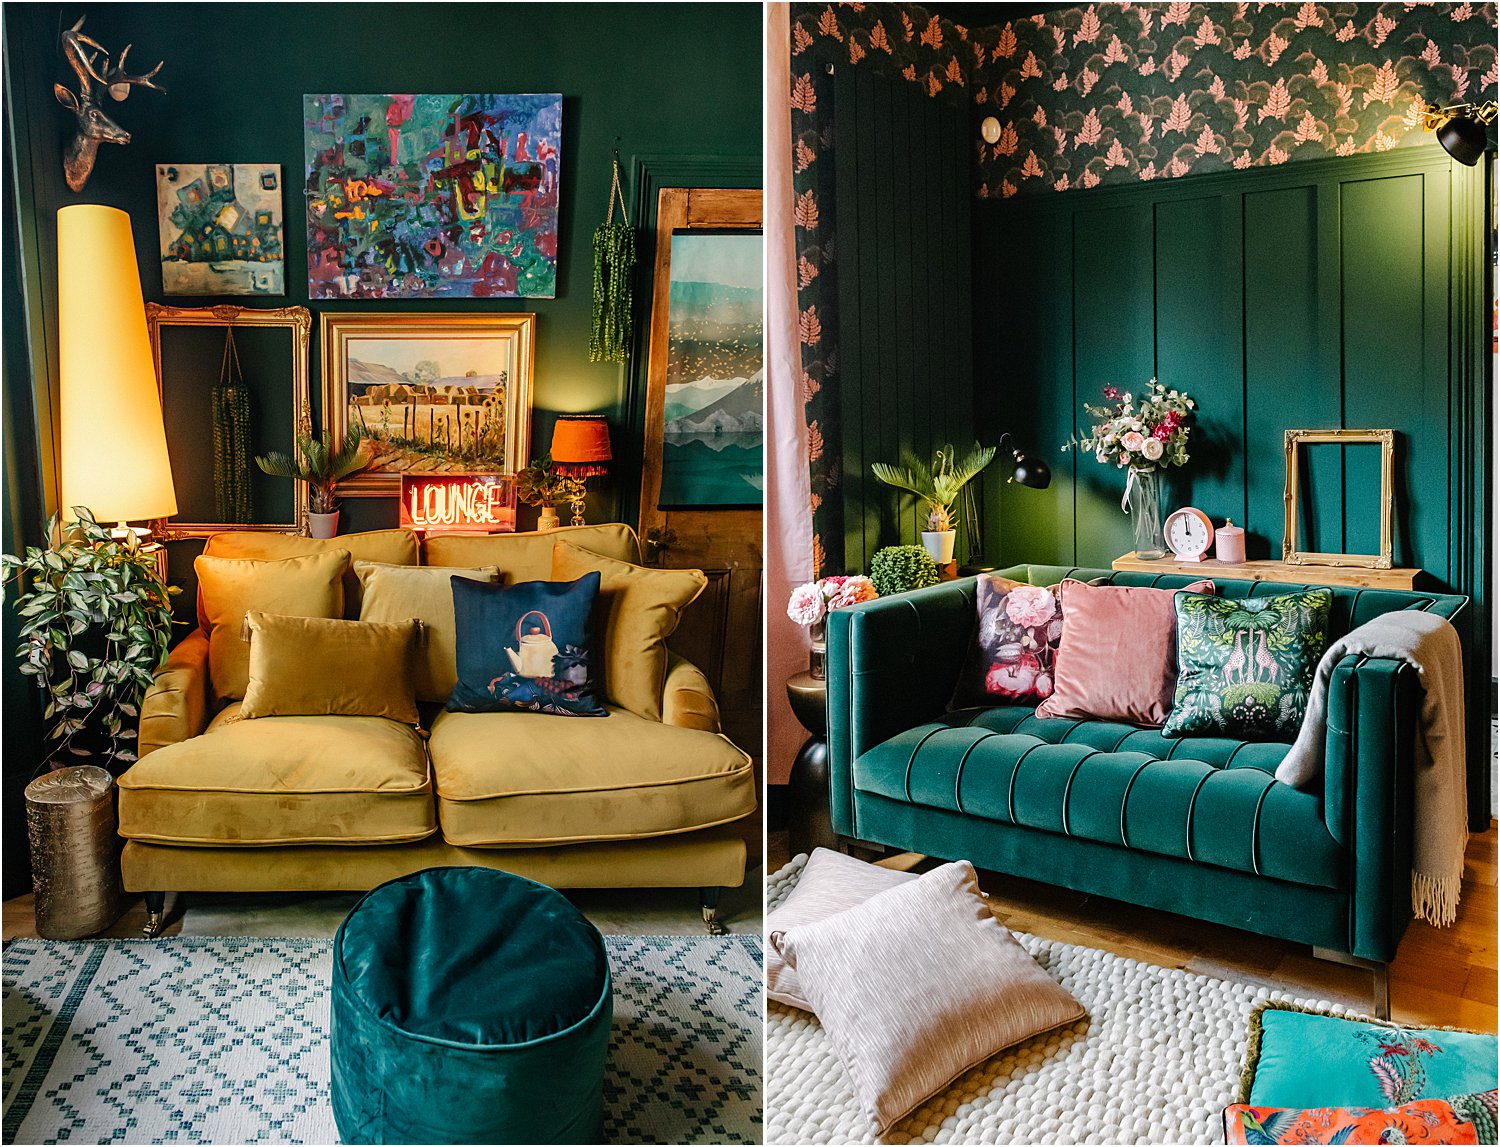 3-tips-in-choosing-a-velvet-sofa-colour